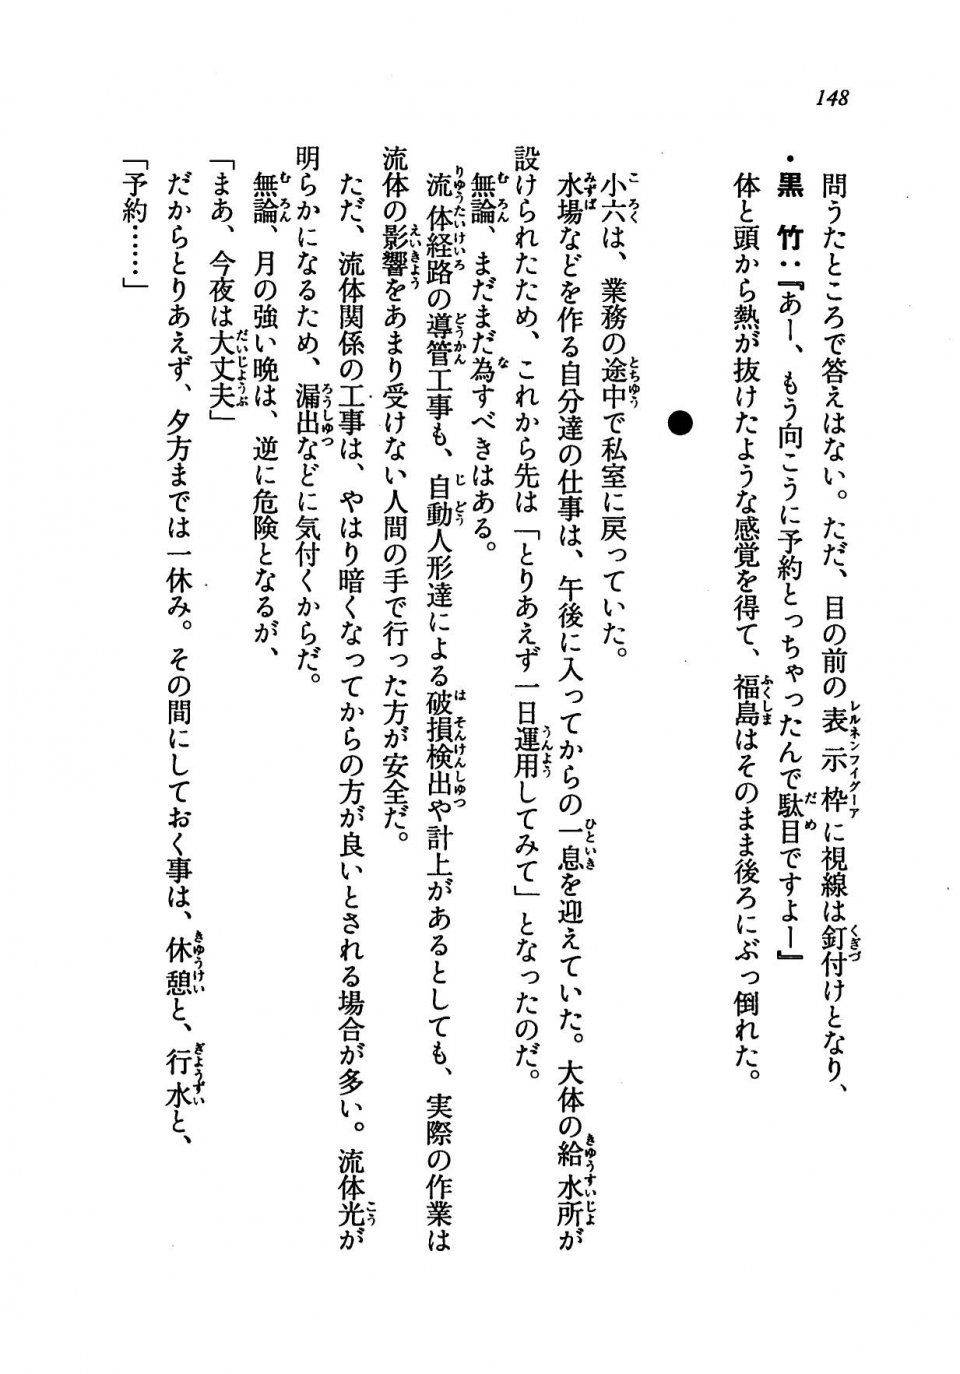 Kyoukai Senjou no Horizon LN Vol 19(8A) - Photo #148